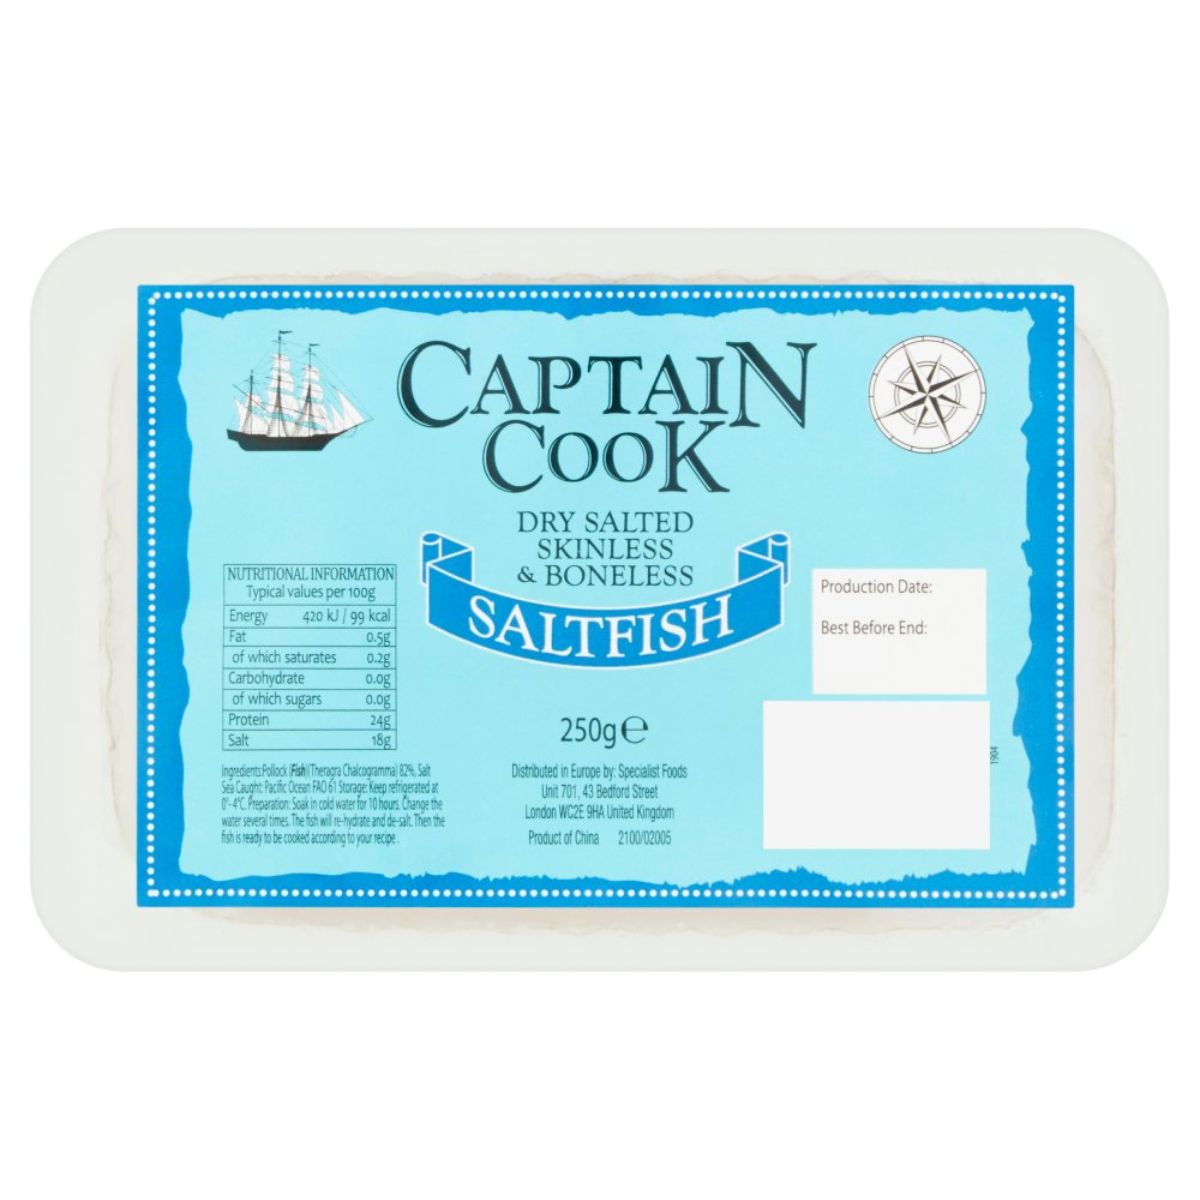 Captain Cook - Dry Salted Skinless & Boneless Salt Fish - 250g.